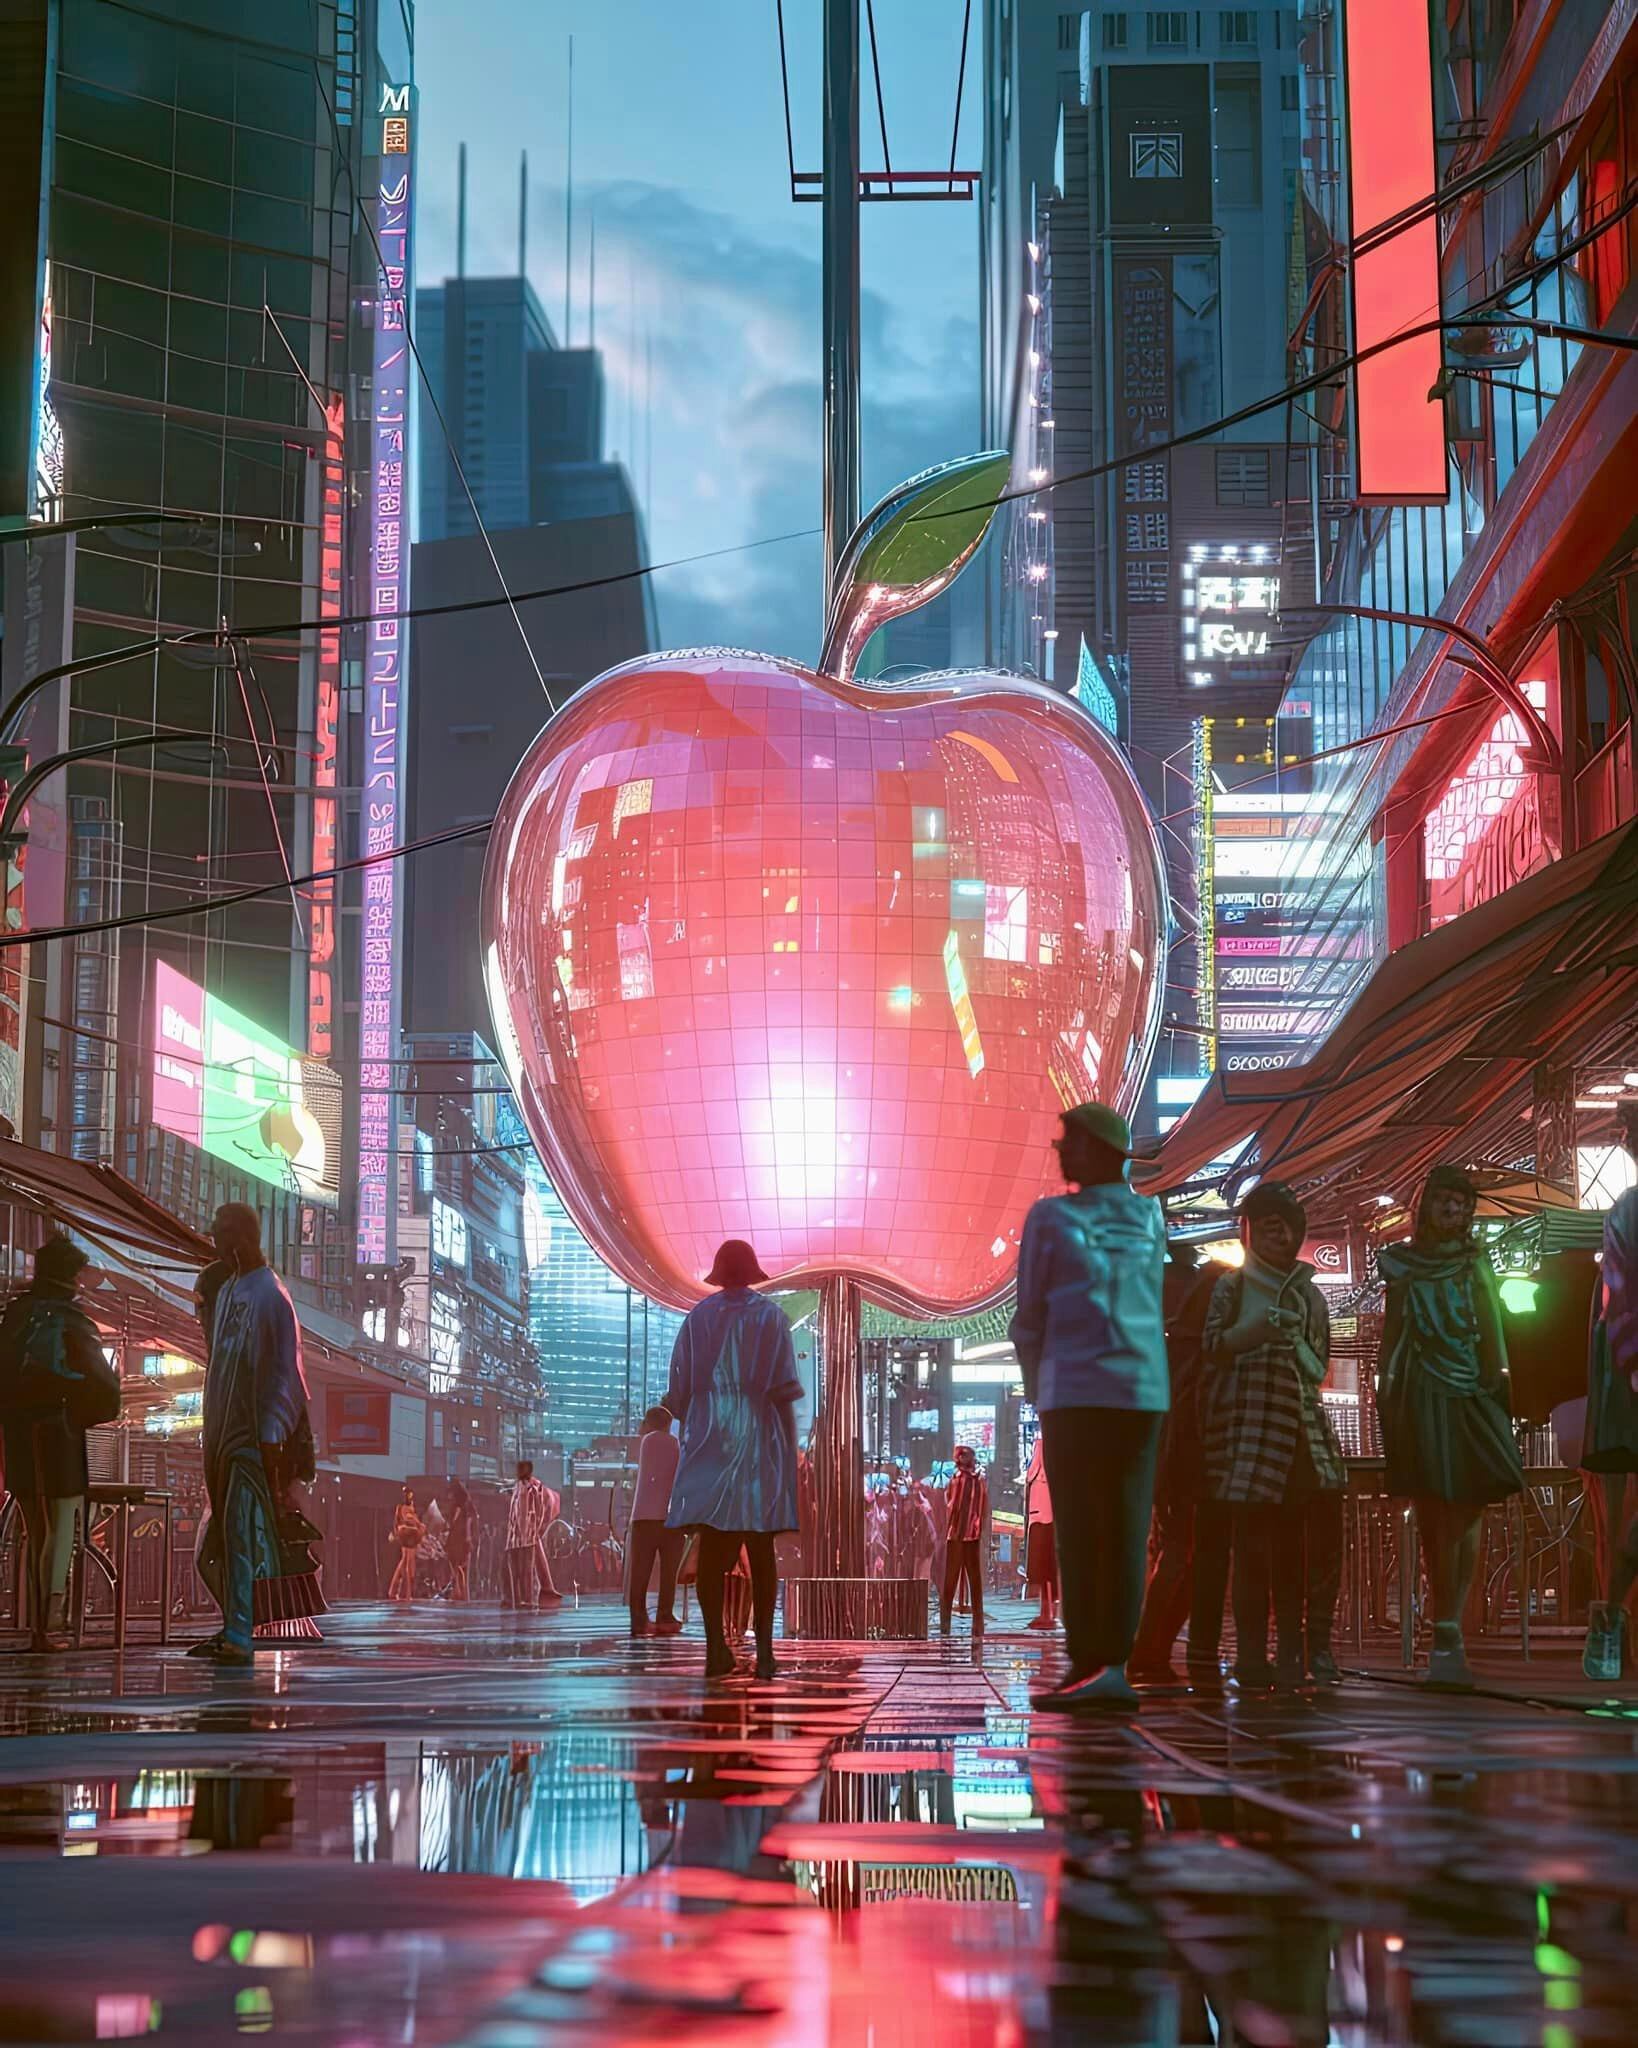 La manzana gigante de Apple según una IA